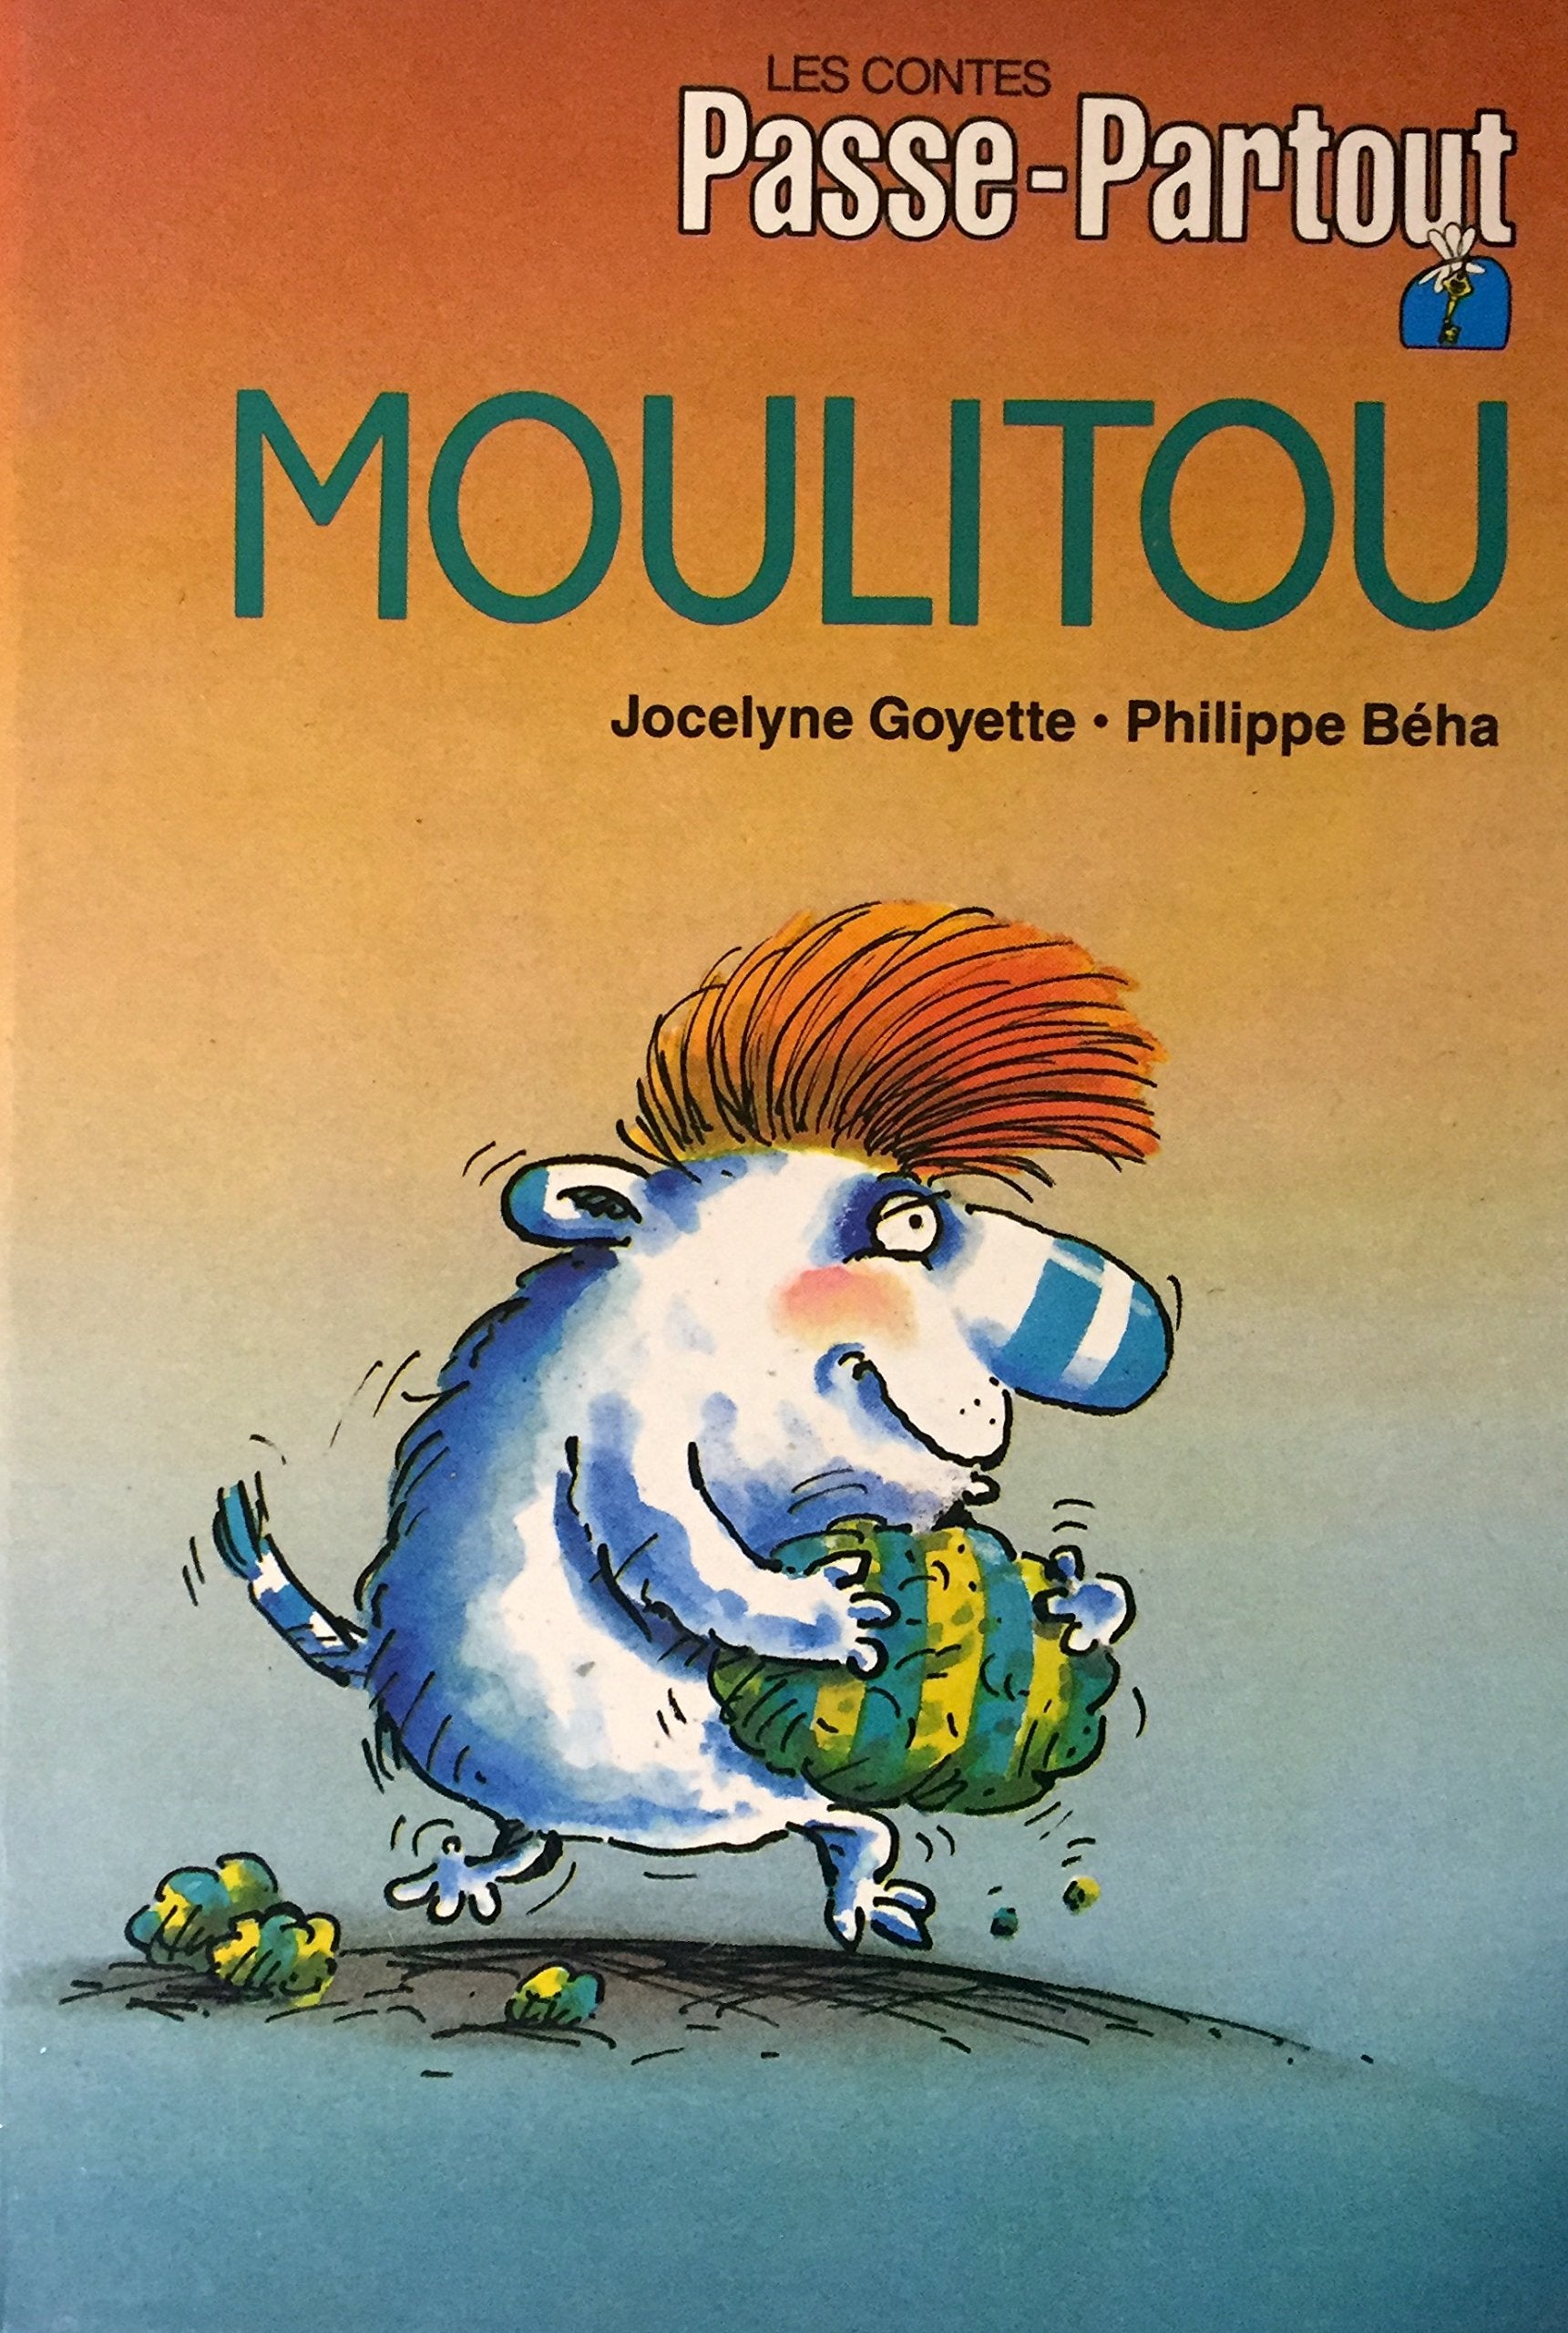 Les contes Passe-Partout : Moulitou - Jocelyne Goyette